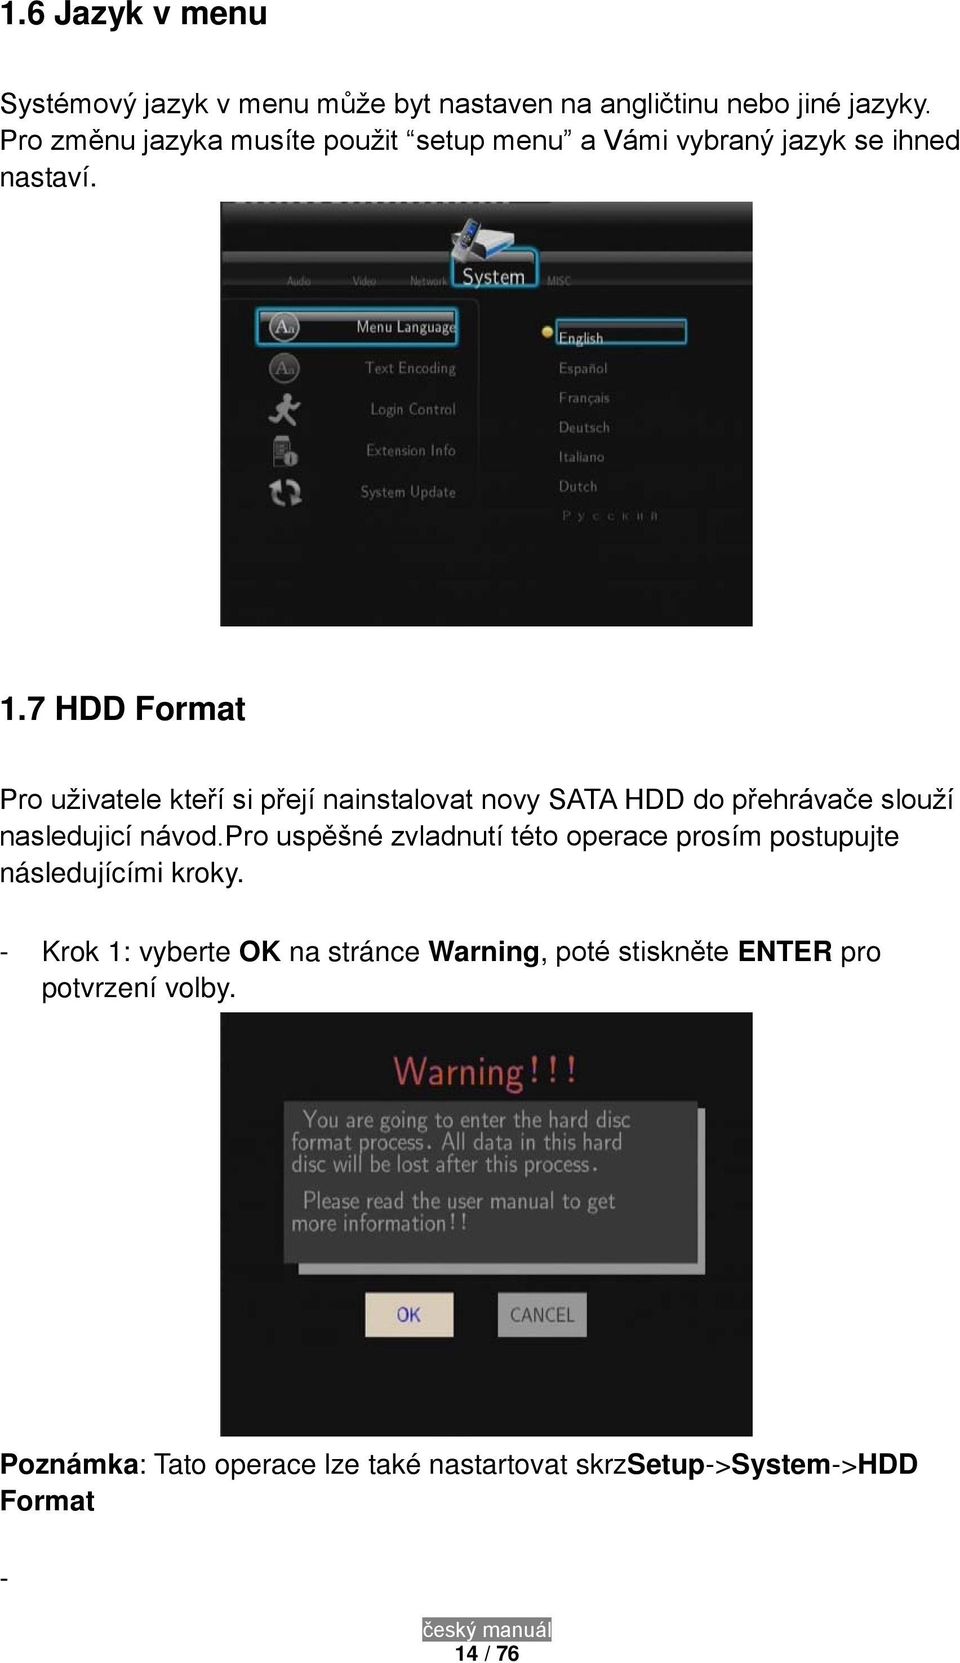 7 HDD Format Pro uživatele kteří si přejí nainstalovat novy SATA HDD do přehrávače slouží nasledujicí návod.